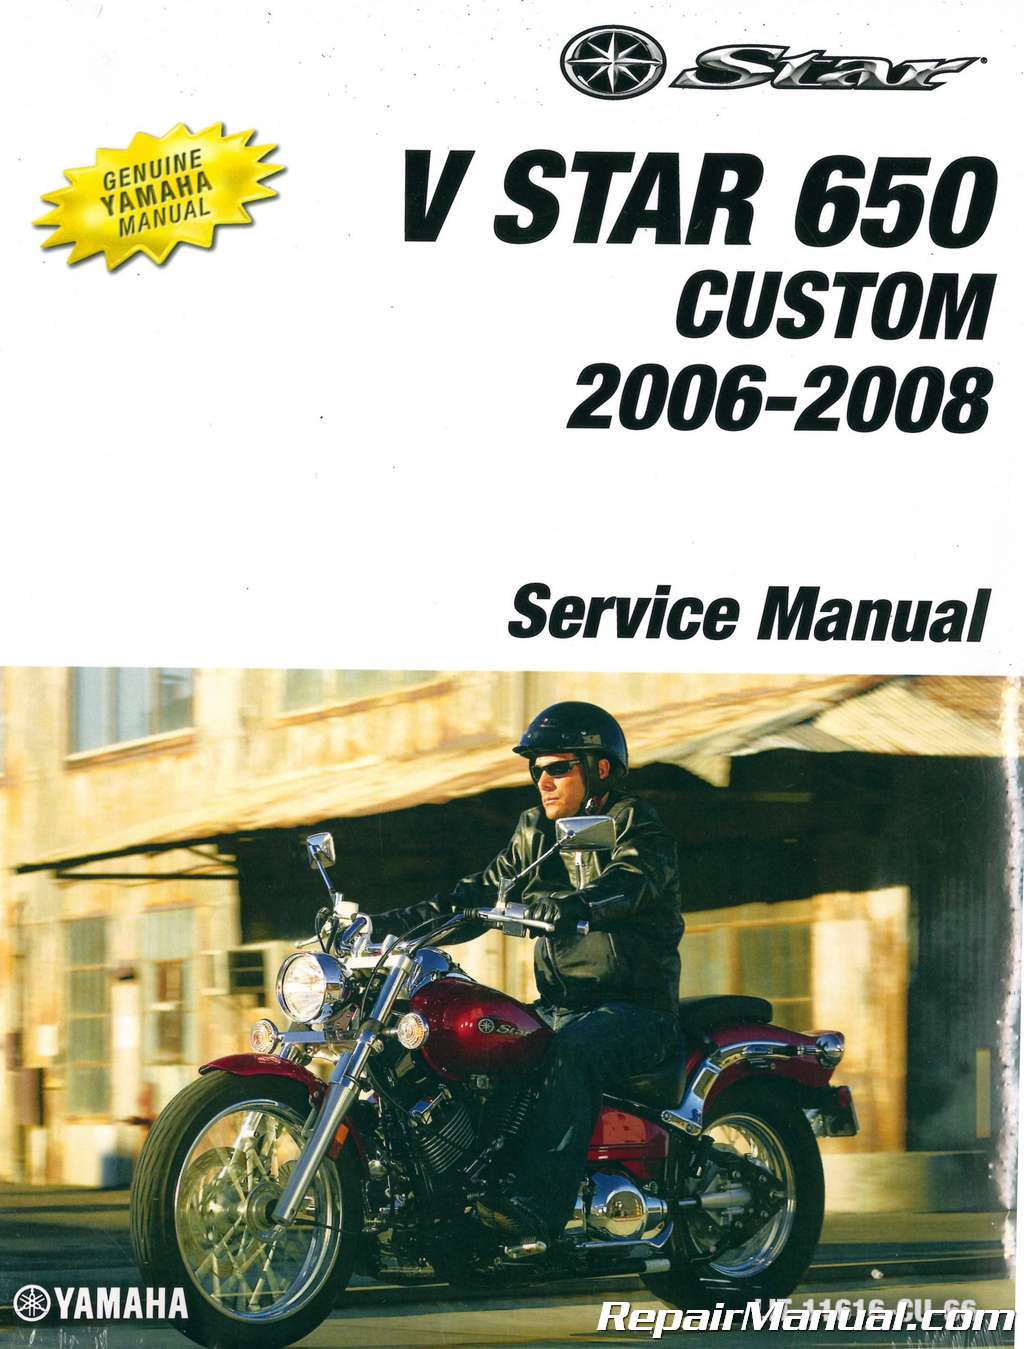 yamaha sj650d service manual